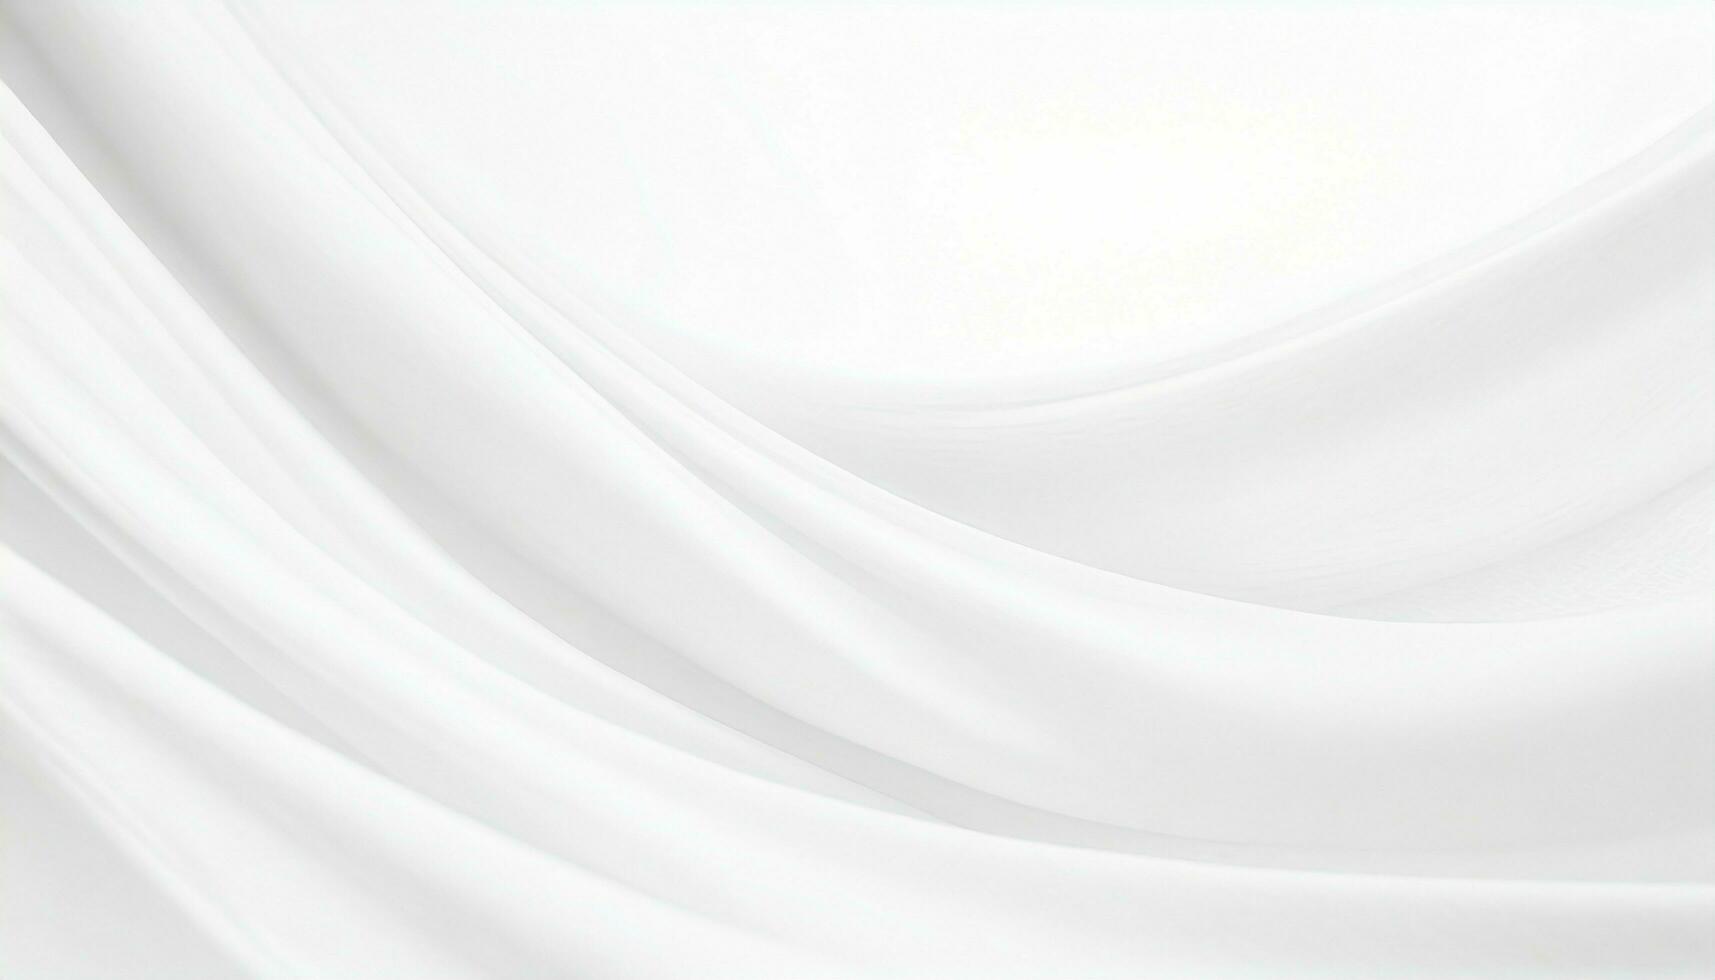 abstrato branco fundo com gentil, fluindo ondas foto